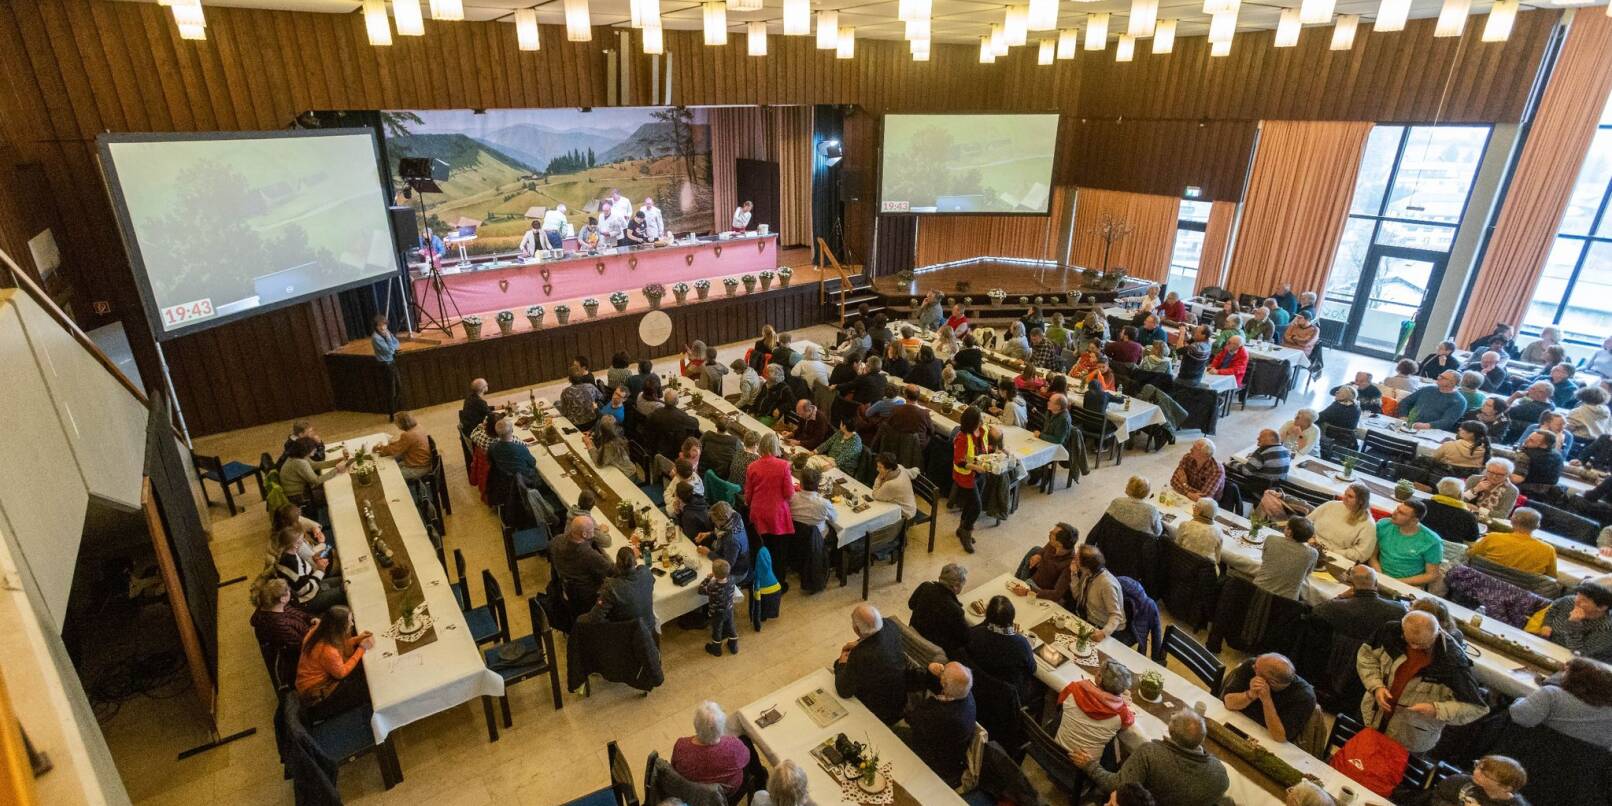 Das Schwarzwälder Kirschtortenfestival im Kurhaus von Todtnauberg zieht ein breites Publikum an.